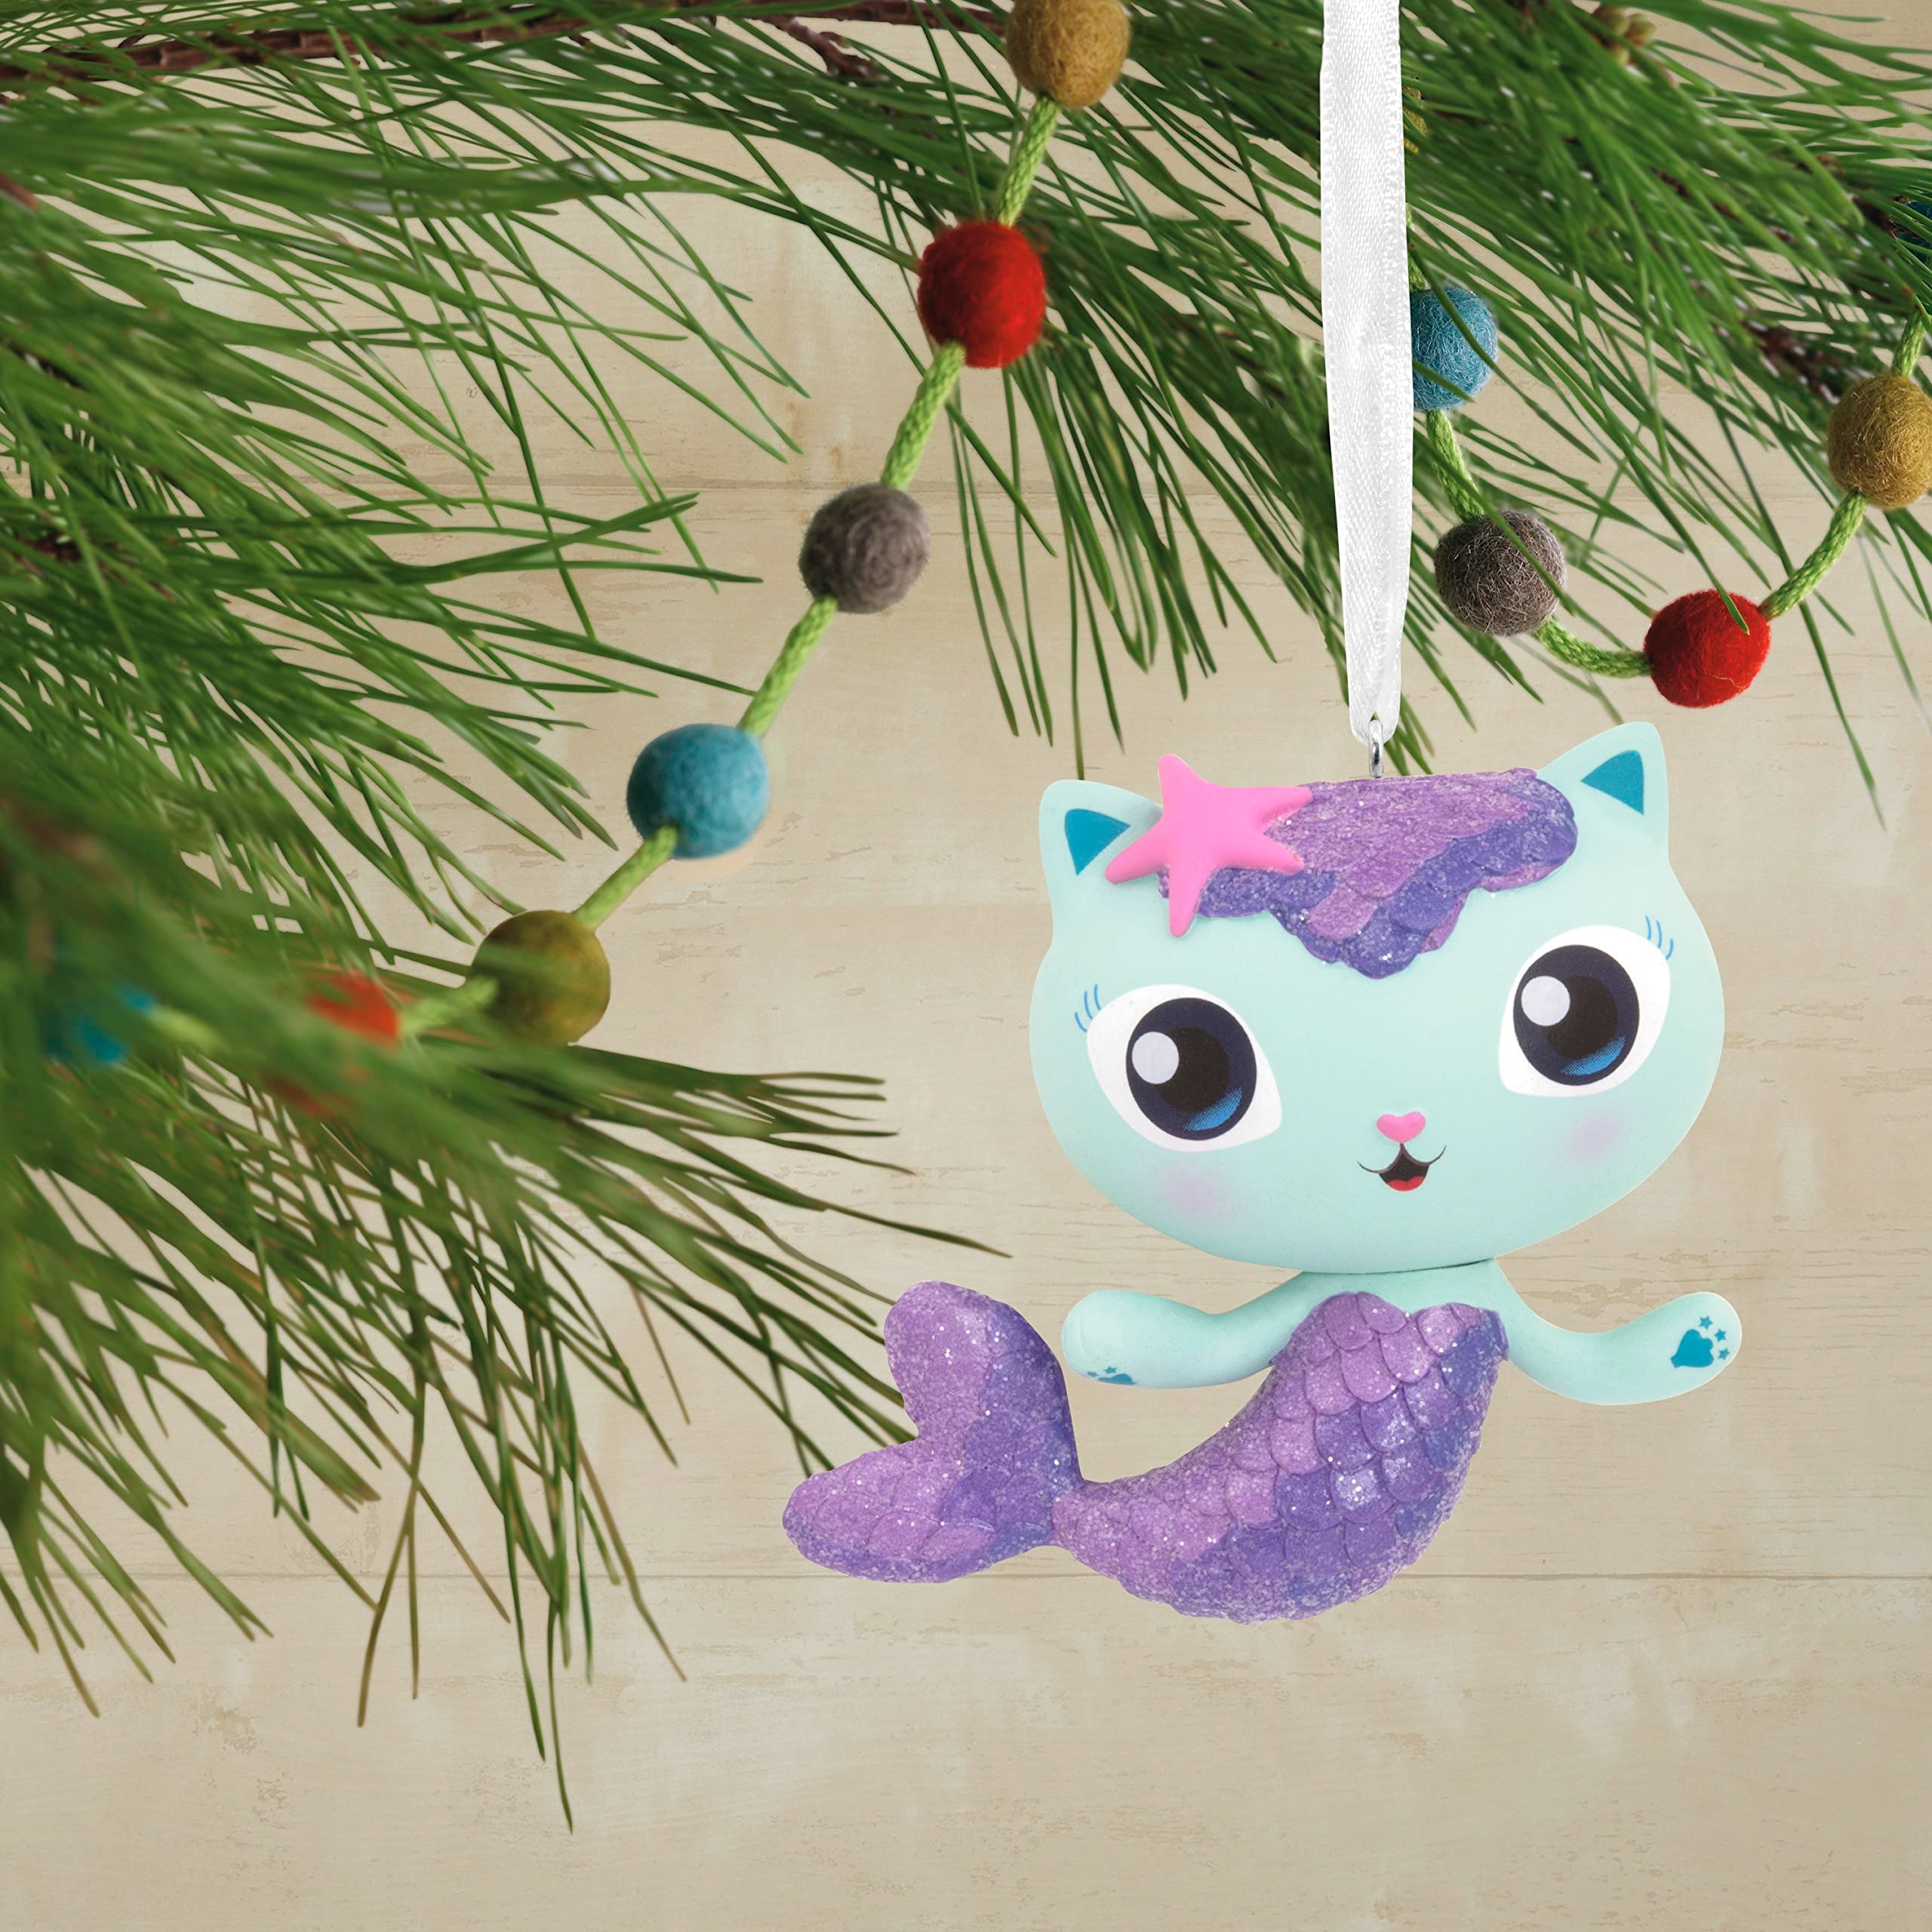 Hallmark DreamWorks Animation Gabby's Dollhouse MerCat Christmas Ornament